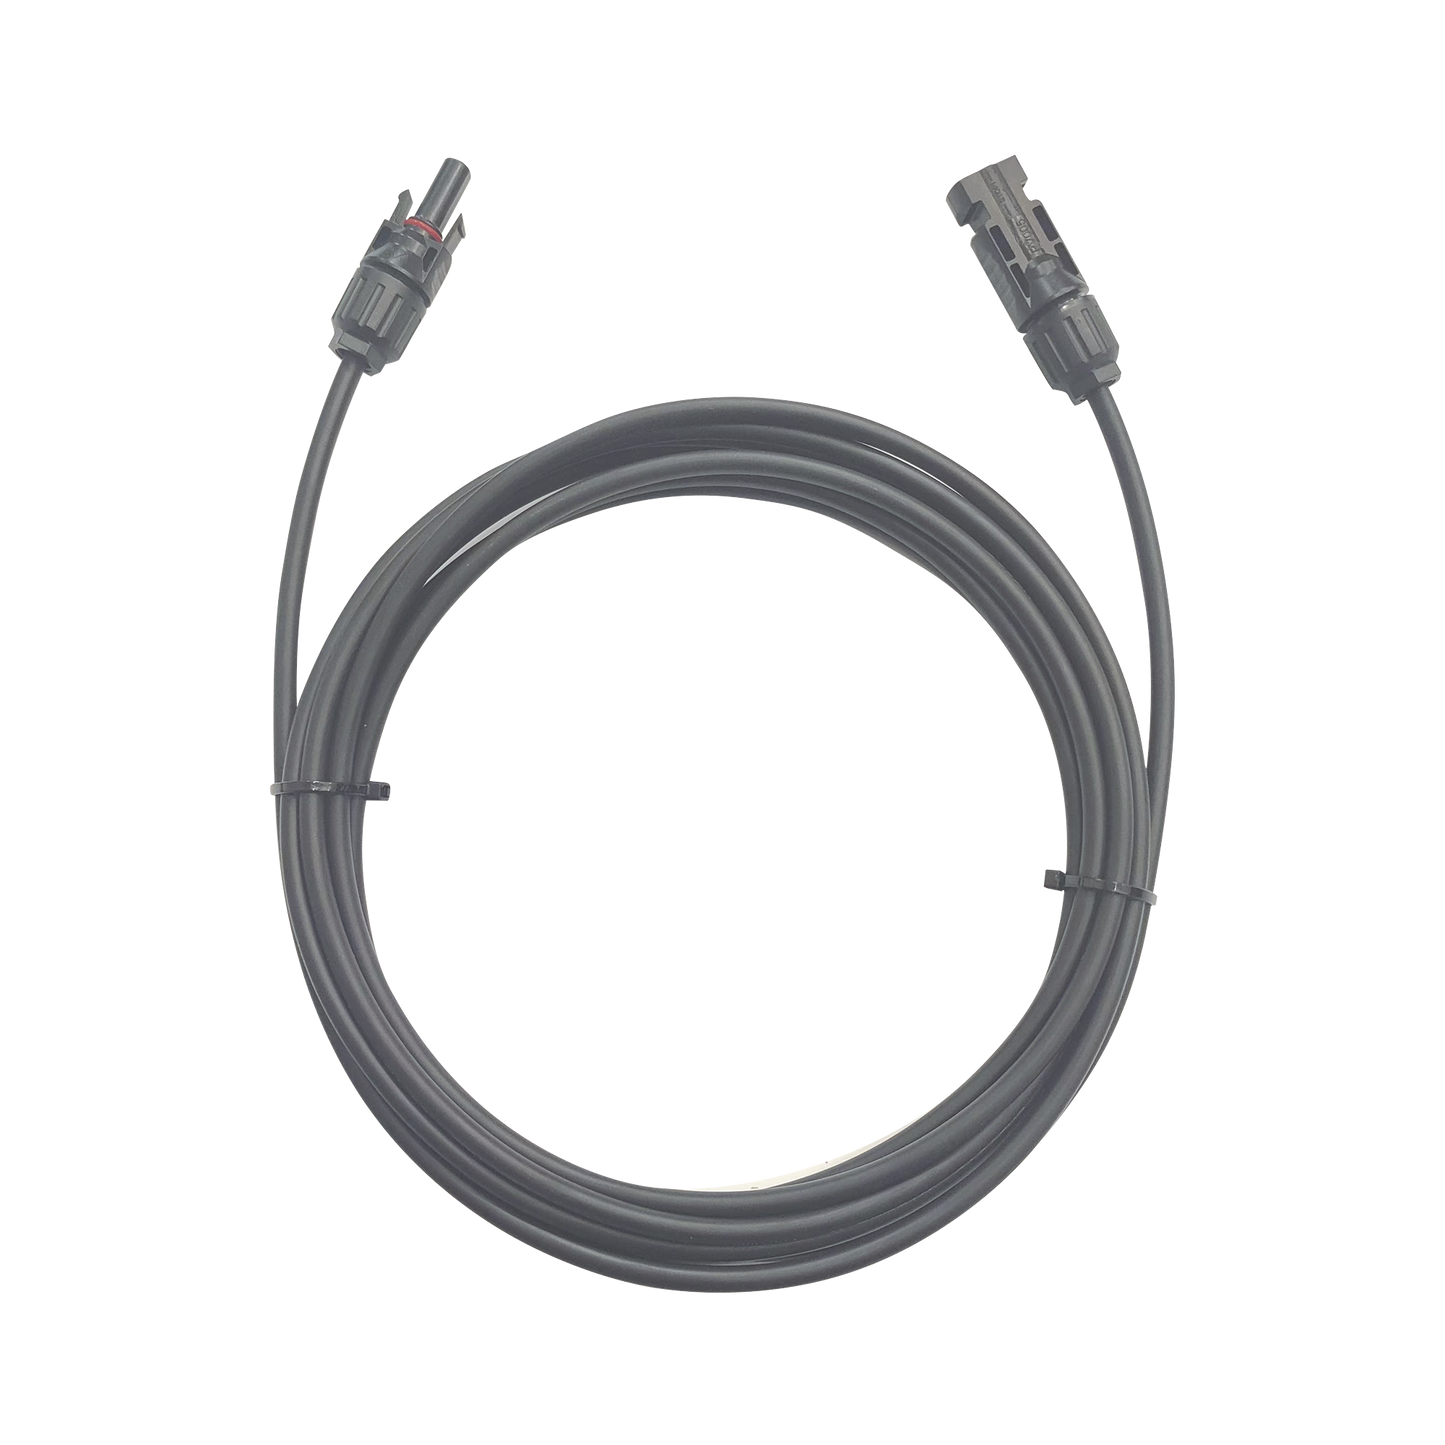 Cable Fotovoltaico / 1 metro / Color Negro / Calibre 10 AWG / Terminal MC4-Macho y Hembra en  ambos extremos